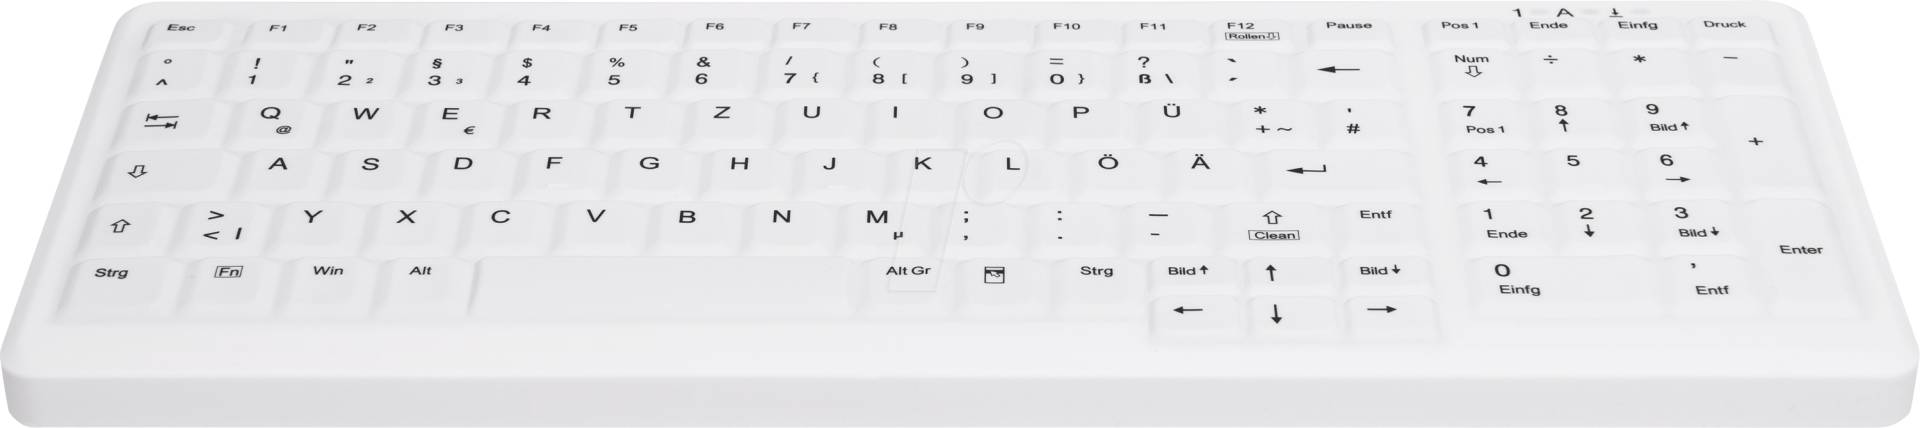 AK-C7000FFU1WGE - Funk-Tastatur, desinfizierbar, Nummernblock, weiß, DE von Cherry